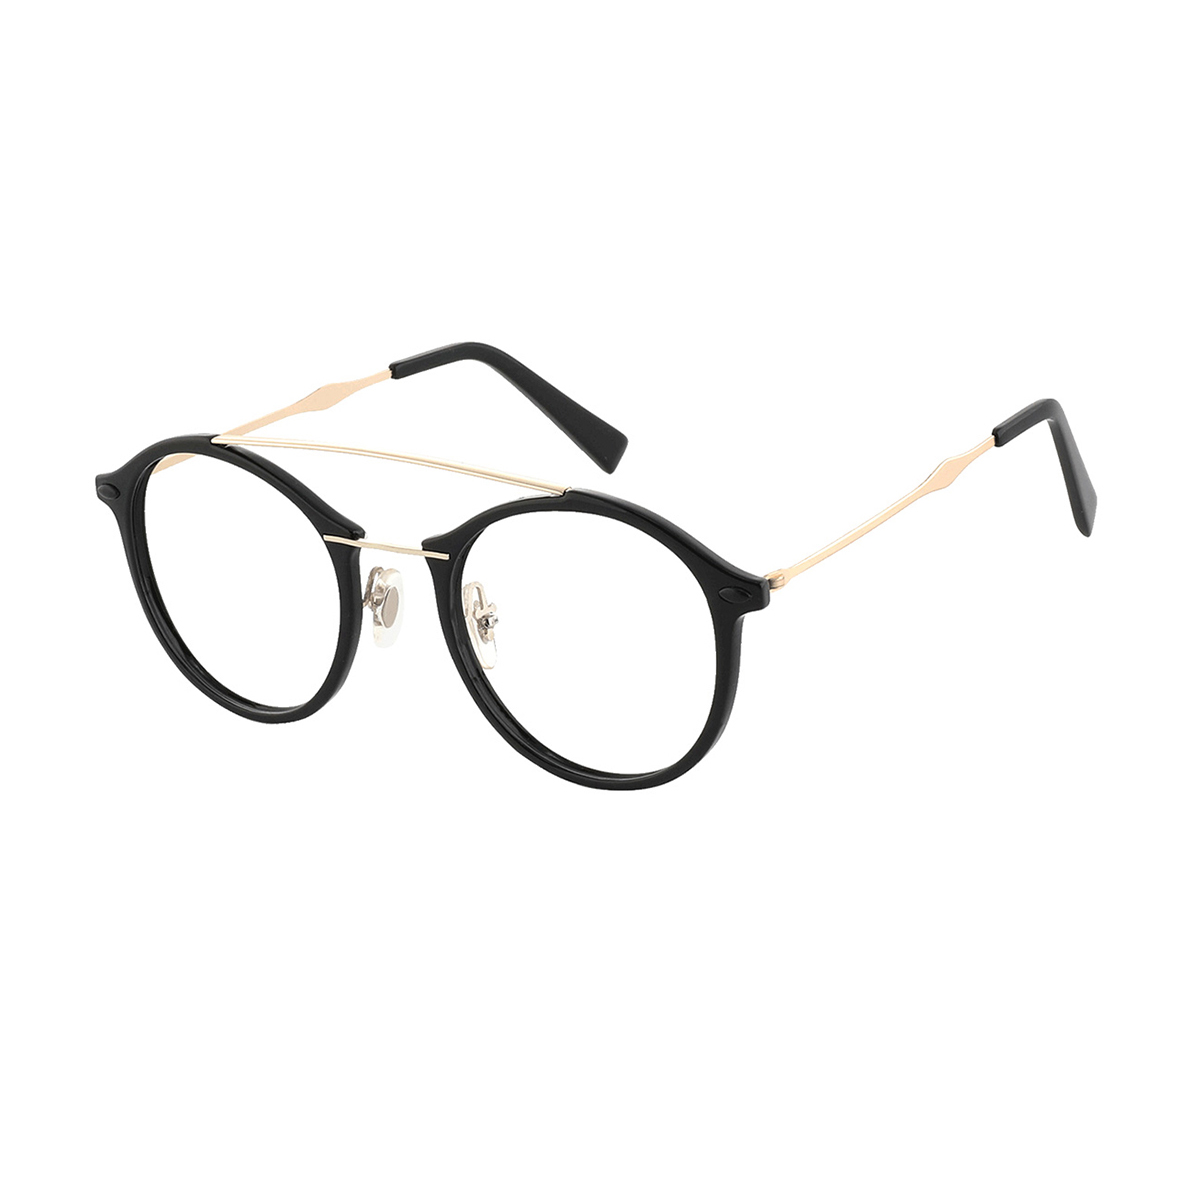 Francesca - Round Black-Gold Reading Glasses for Men & Women